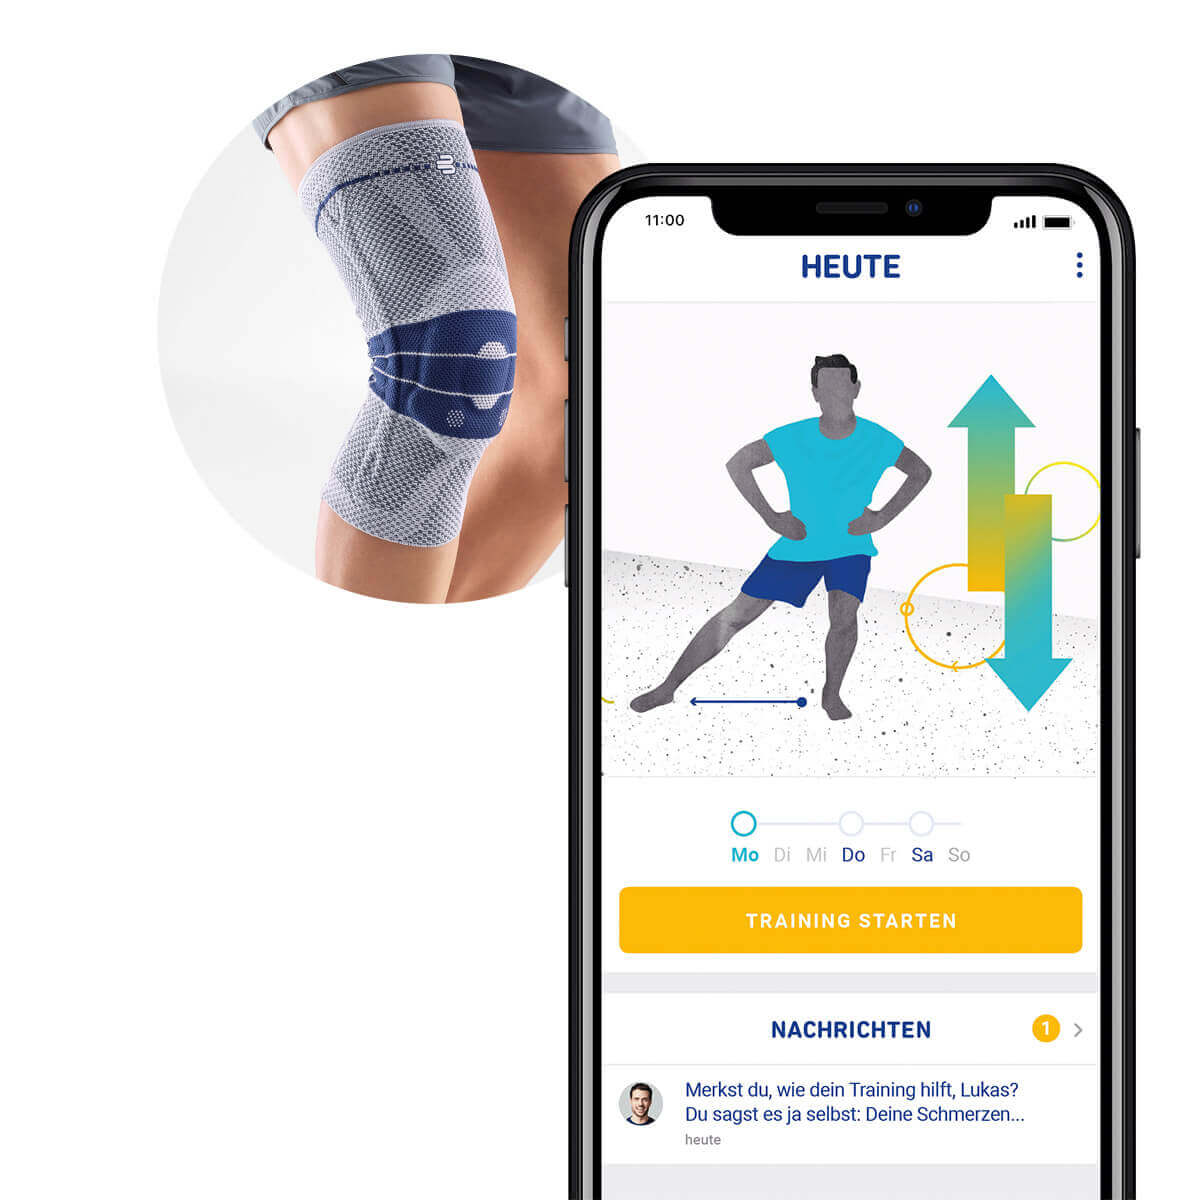 Darstellung der von Bauerfeind entwickelten Therapie-App mit Übungen für das Knie. Im Hintergrund ist die GenuTrain Kniebandage von Bauerfeind erkennbar.